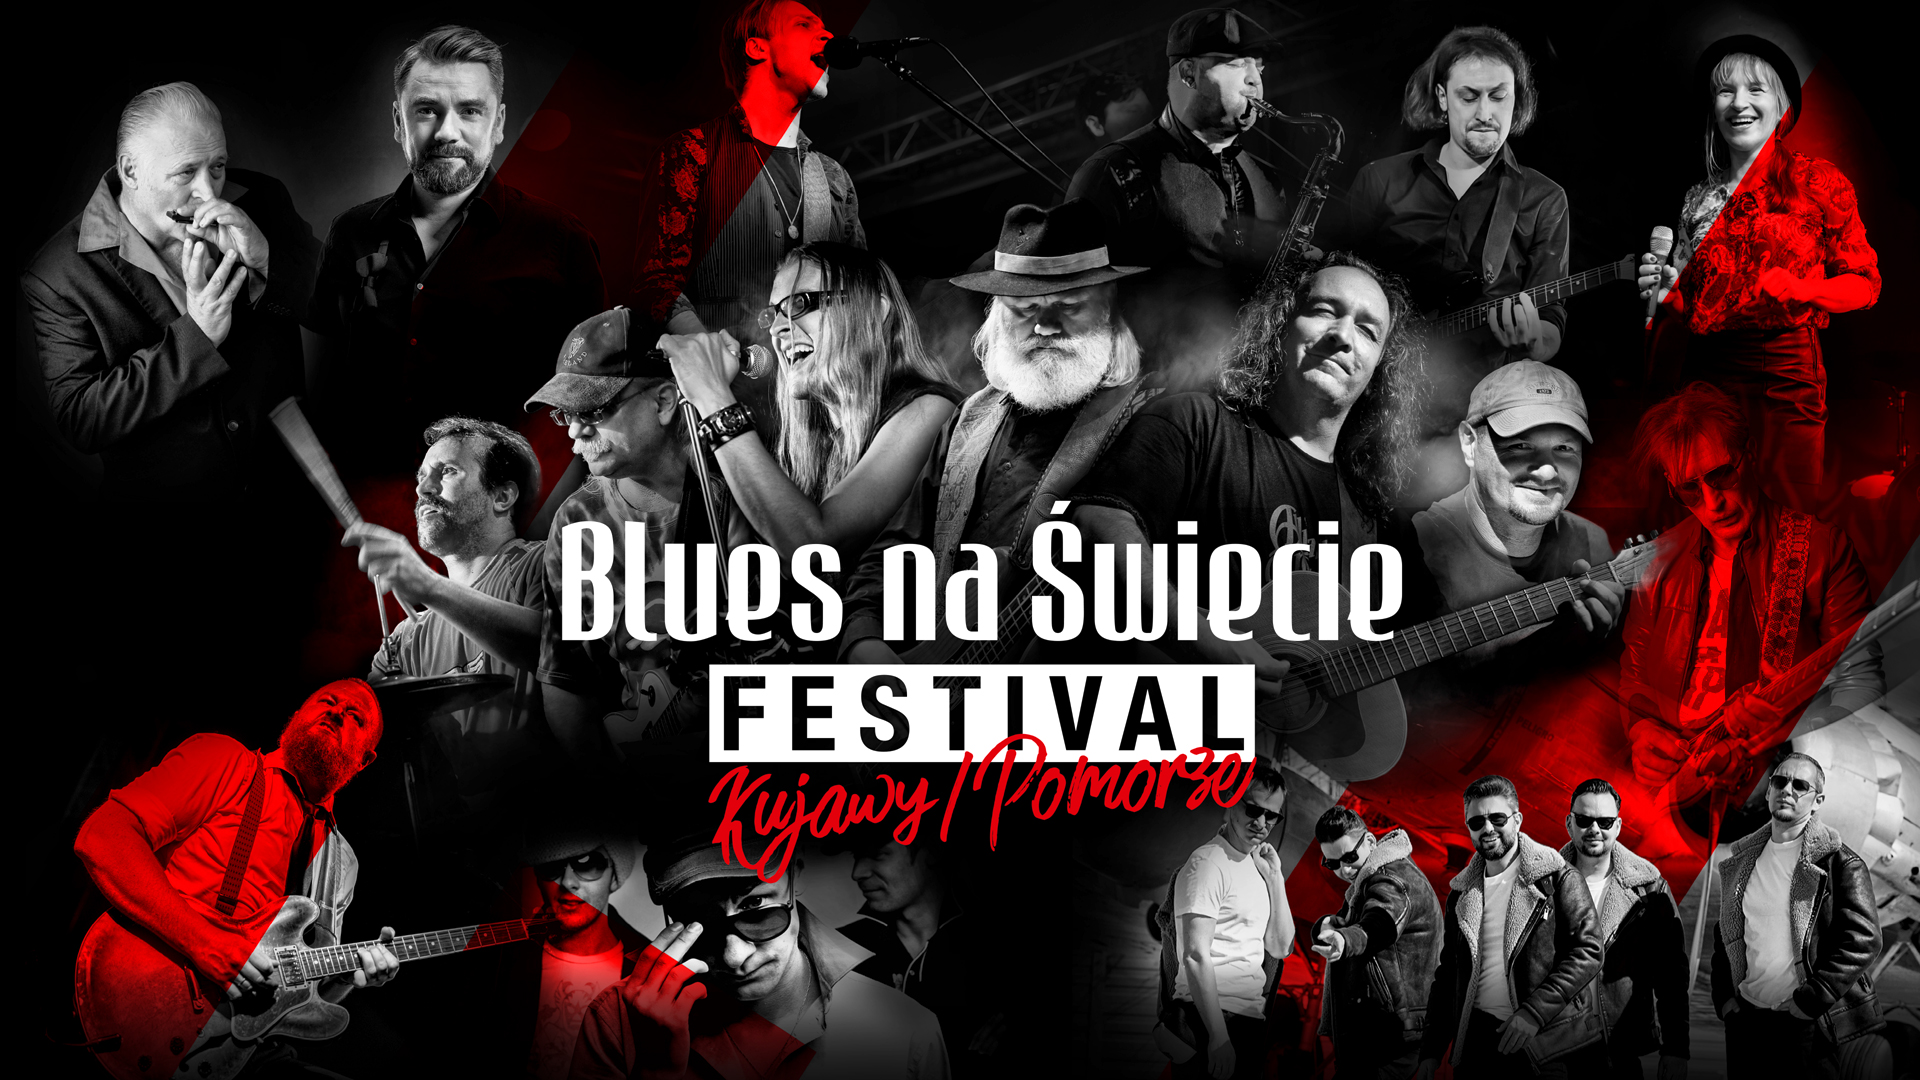 13. Blues na Świecie Festival Kujawy/Pomorze